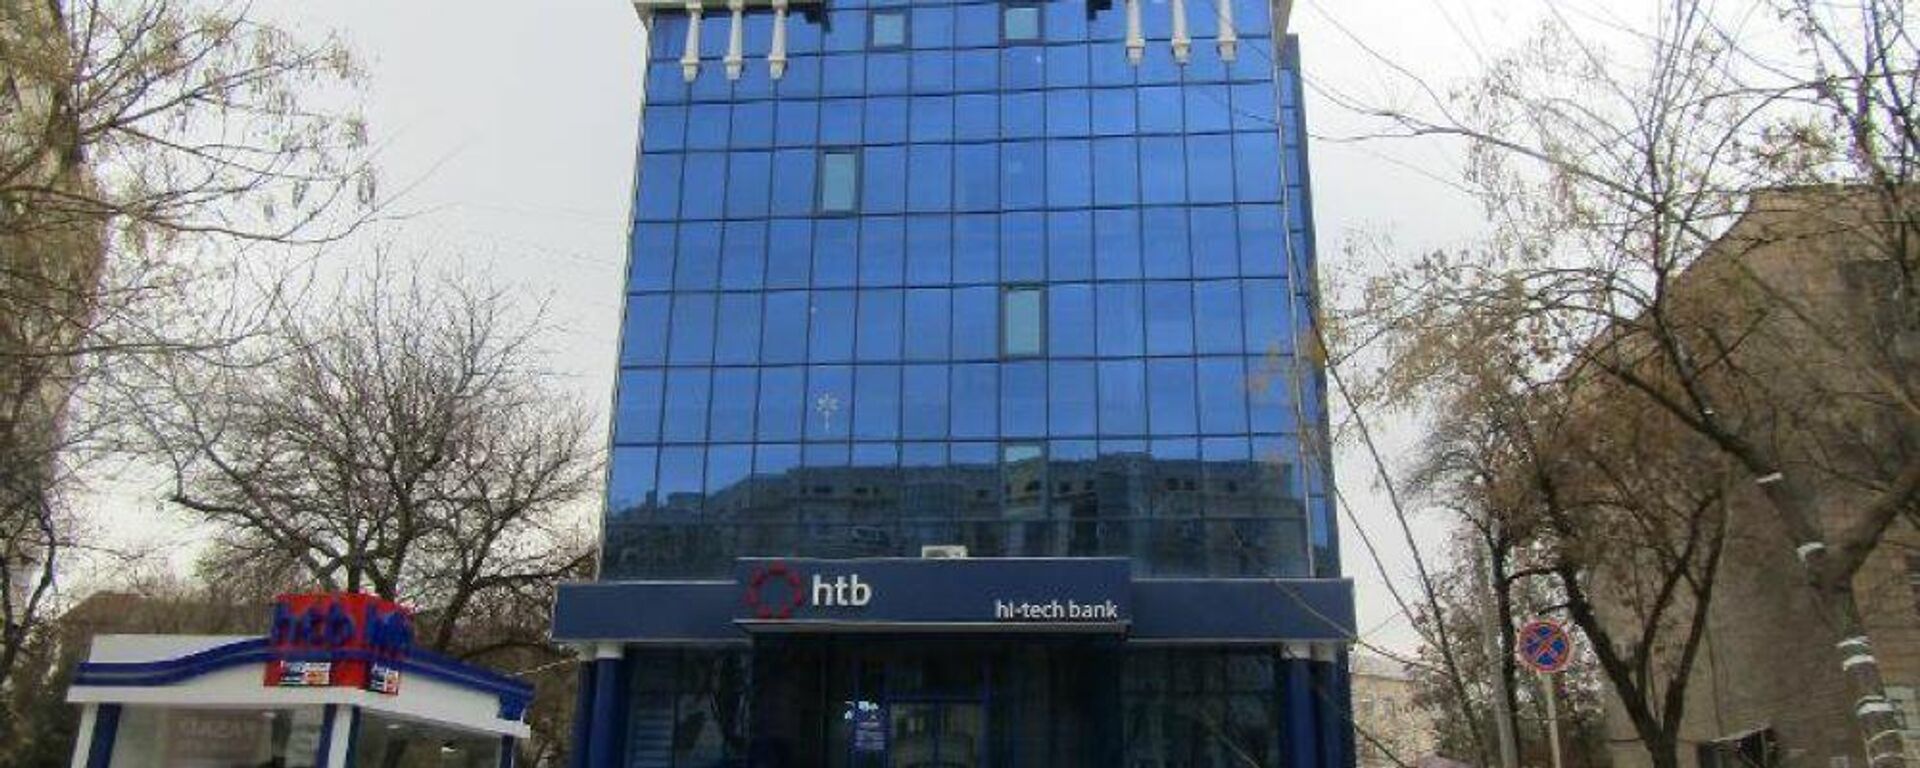 Здание, где находится офис Hi-Tech Bank, выставили на аукцион - Sputnik Узбекистан, 1920, 01.04.2021